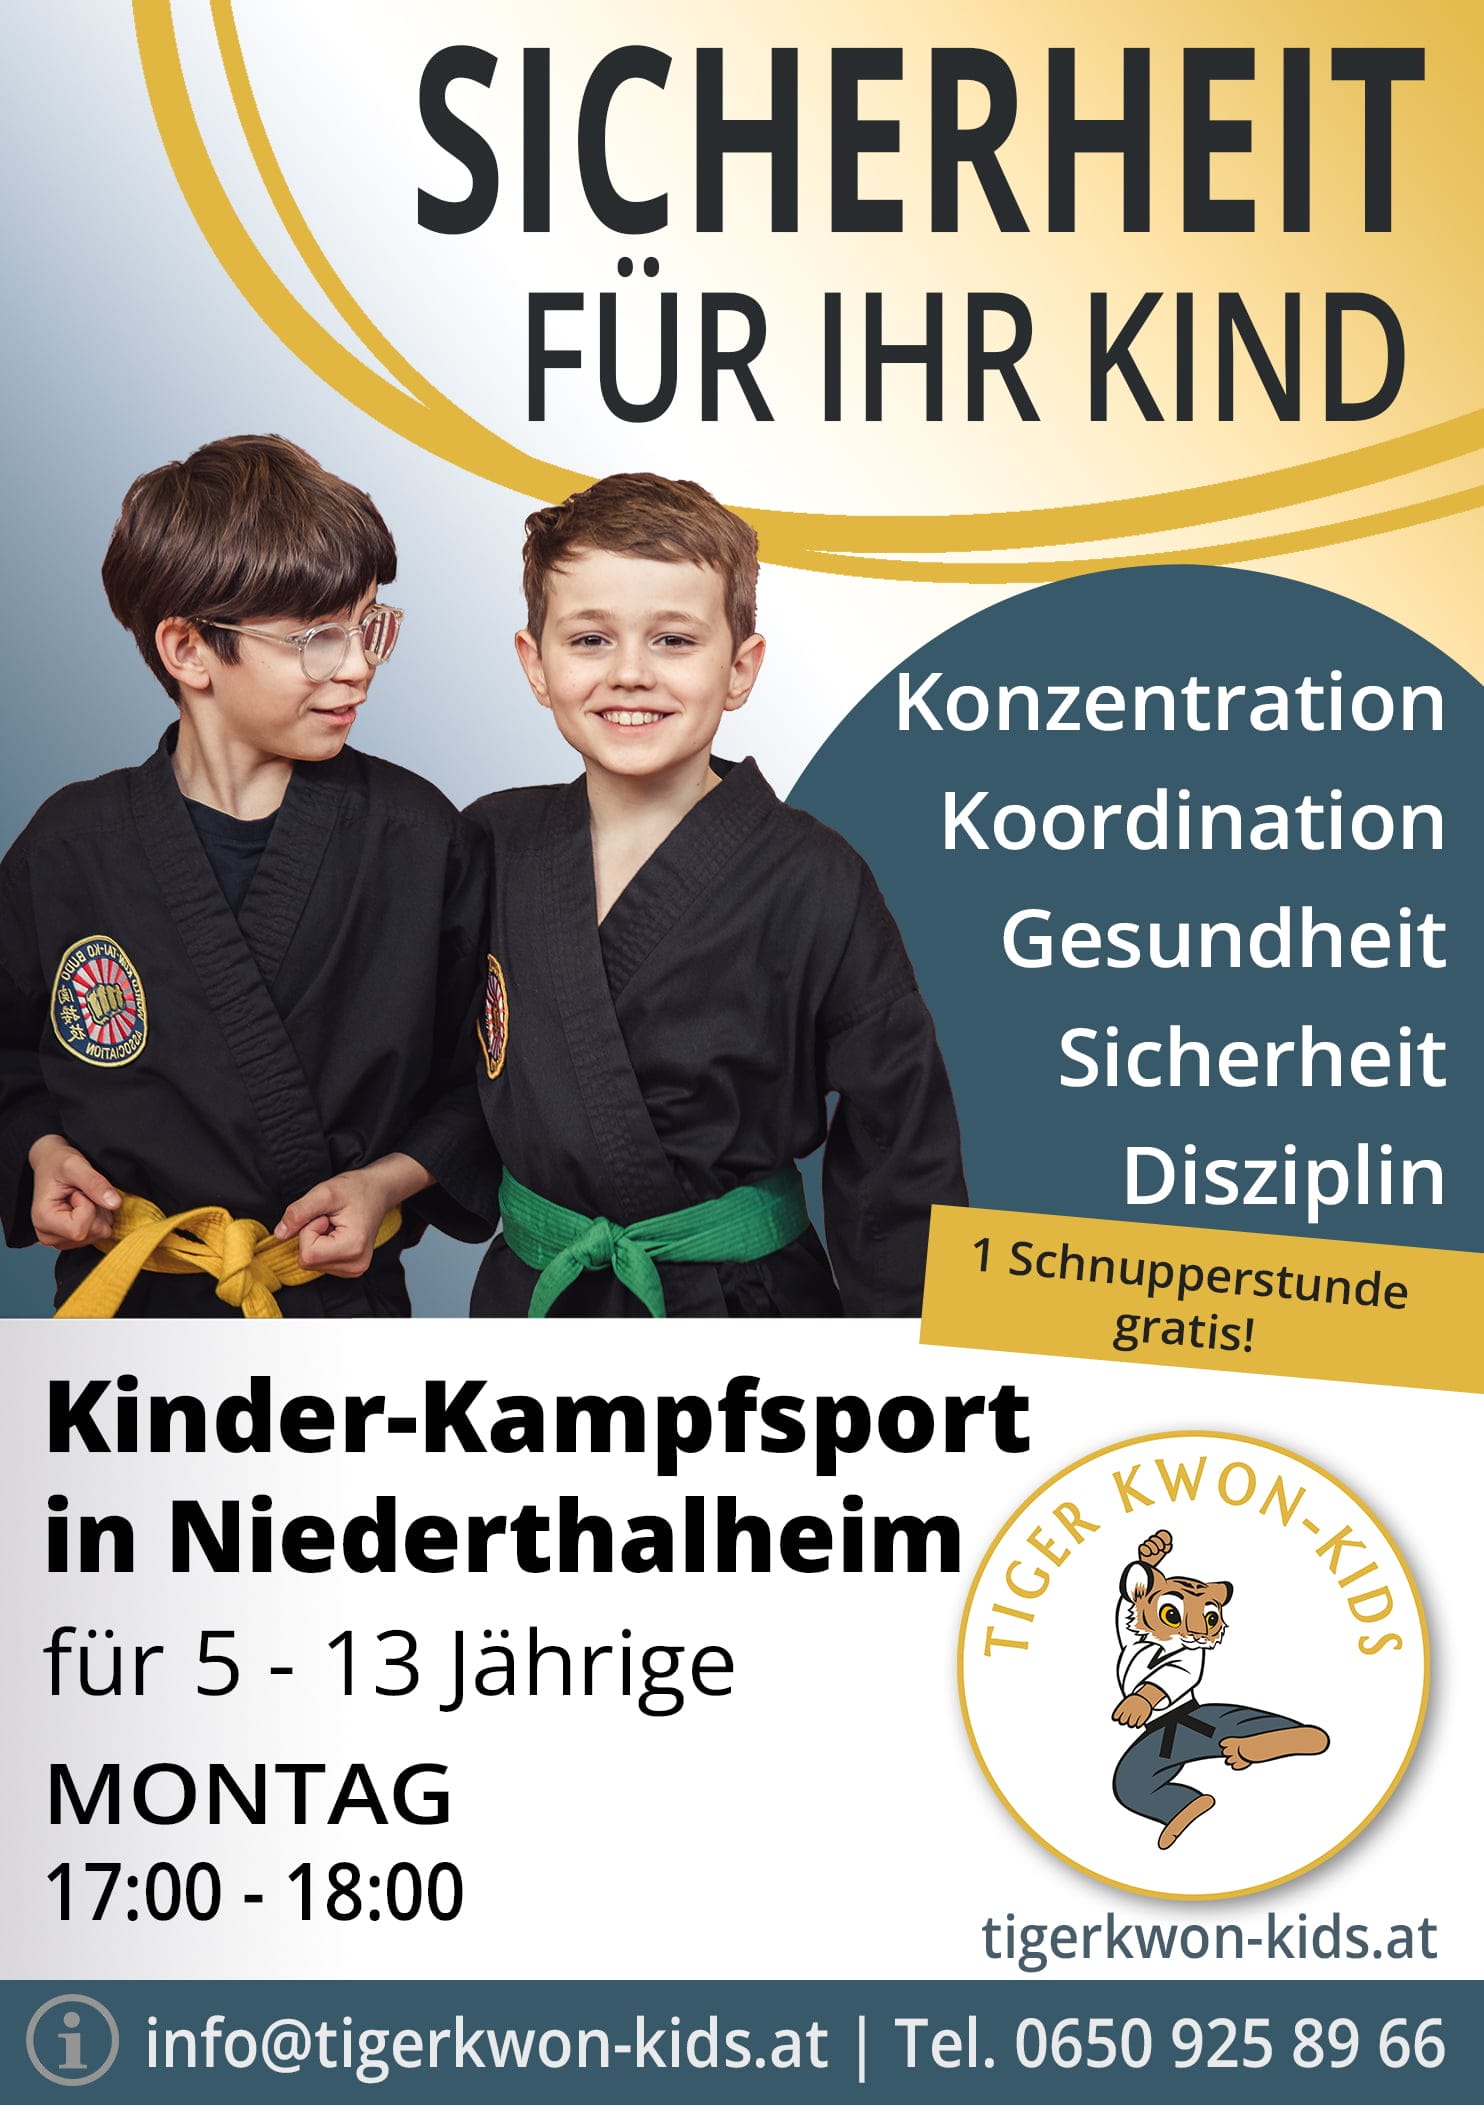 Flyer des Tiger Kwon - Kids Standorts in Niederthalheim mit Informationen zu Trainingsort und -zeit, illustriert durch fröhliche Jungen und Mädchen.